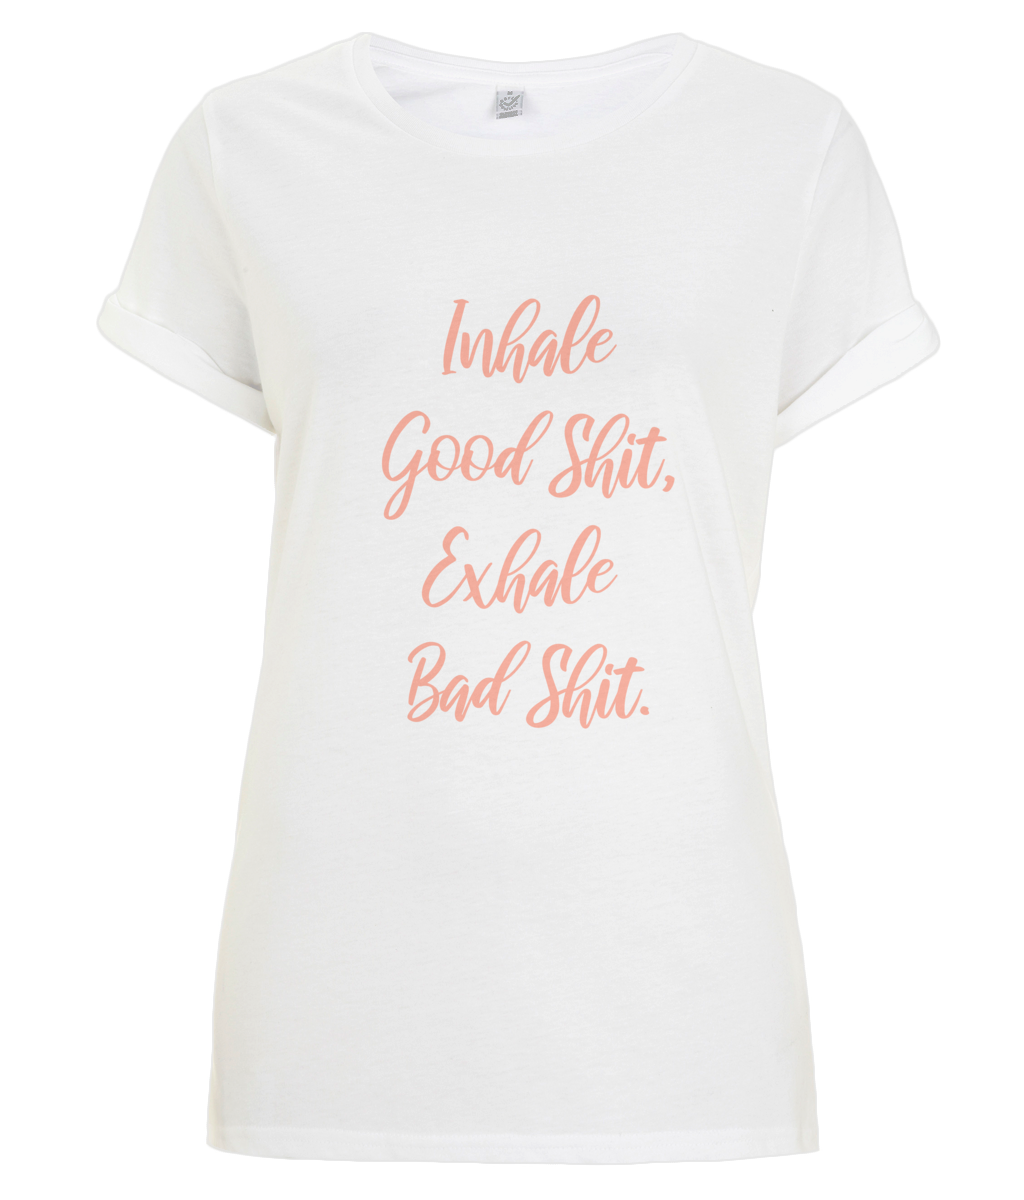 Inhale Good Shit - organic T-shirt - Peach.